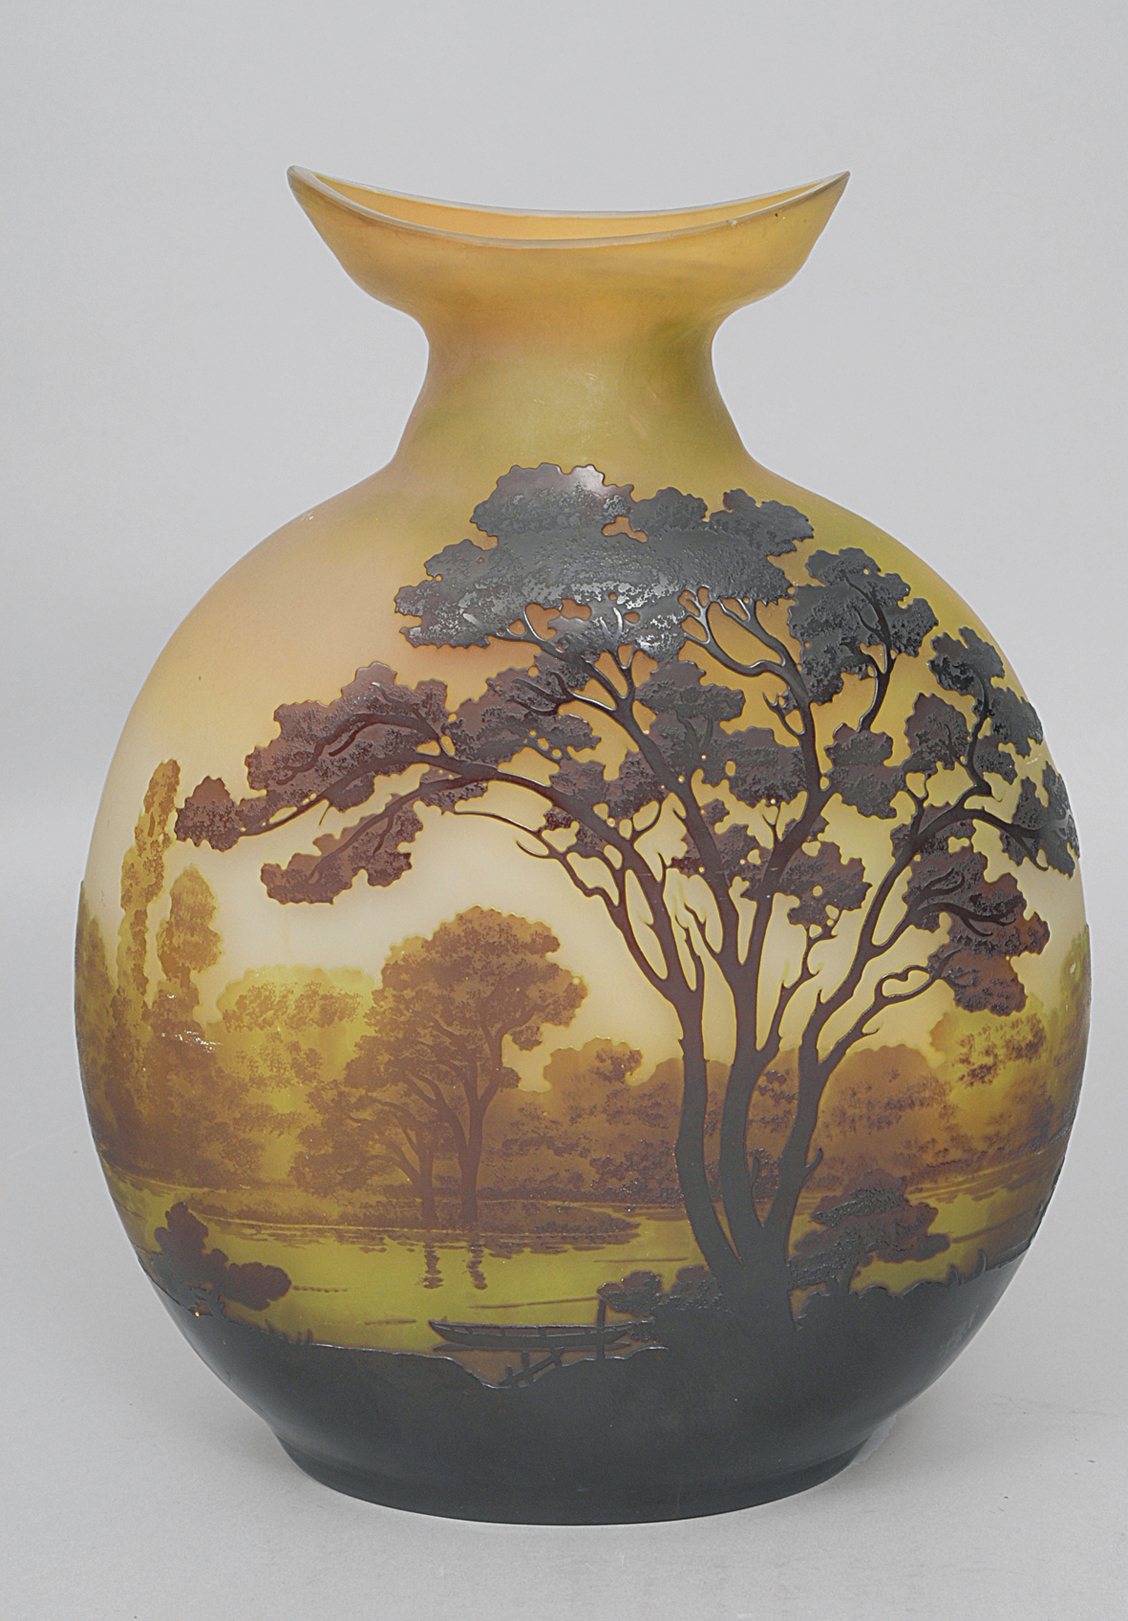 A large art nouveau vase with river landscapes